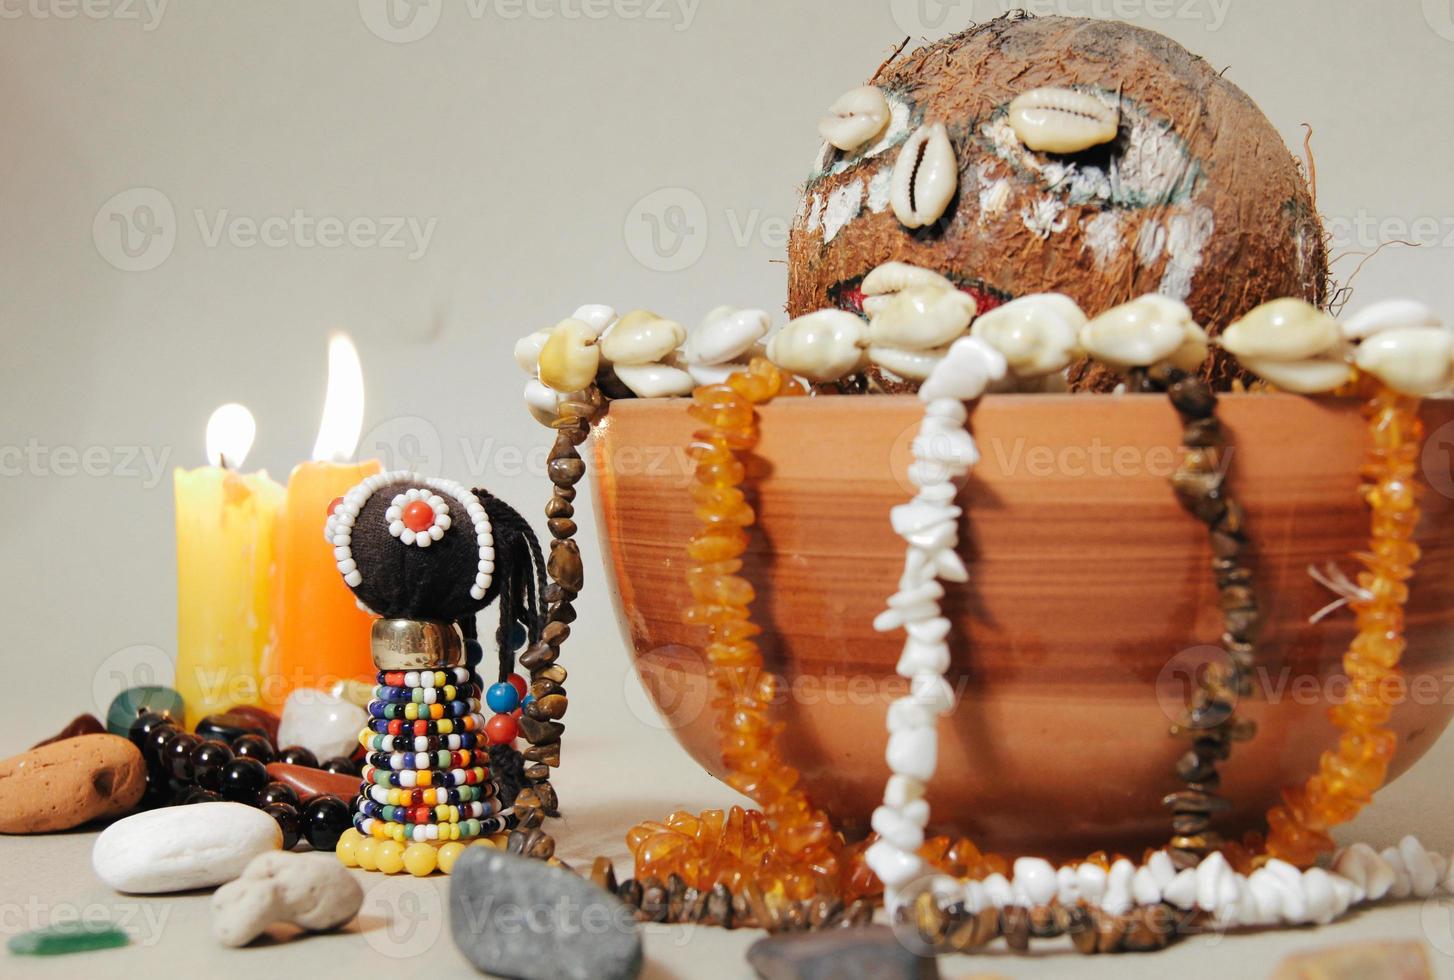 occult altaar voor voodoo-ritueel. sjamanisme foto